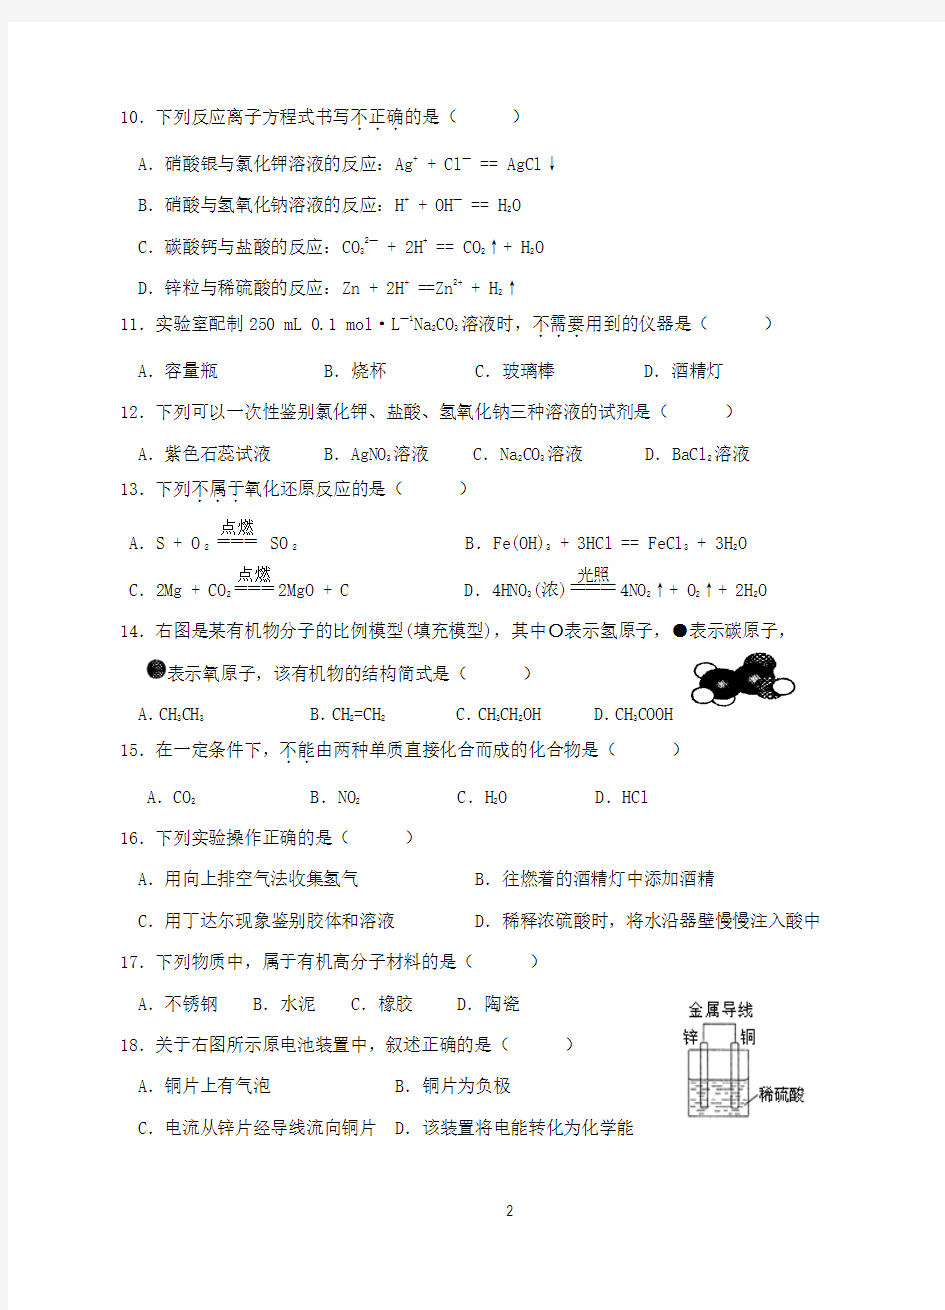 2015年1月福建省普通高中基础学业会考化学试题